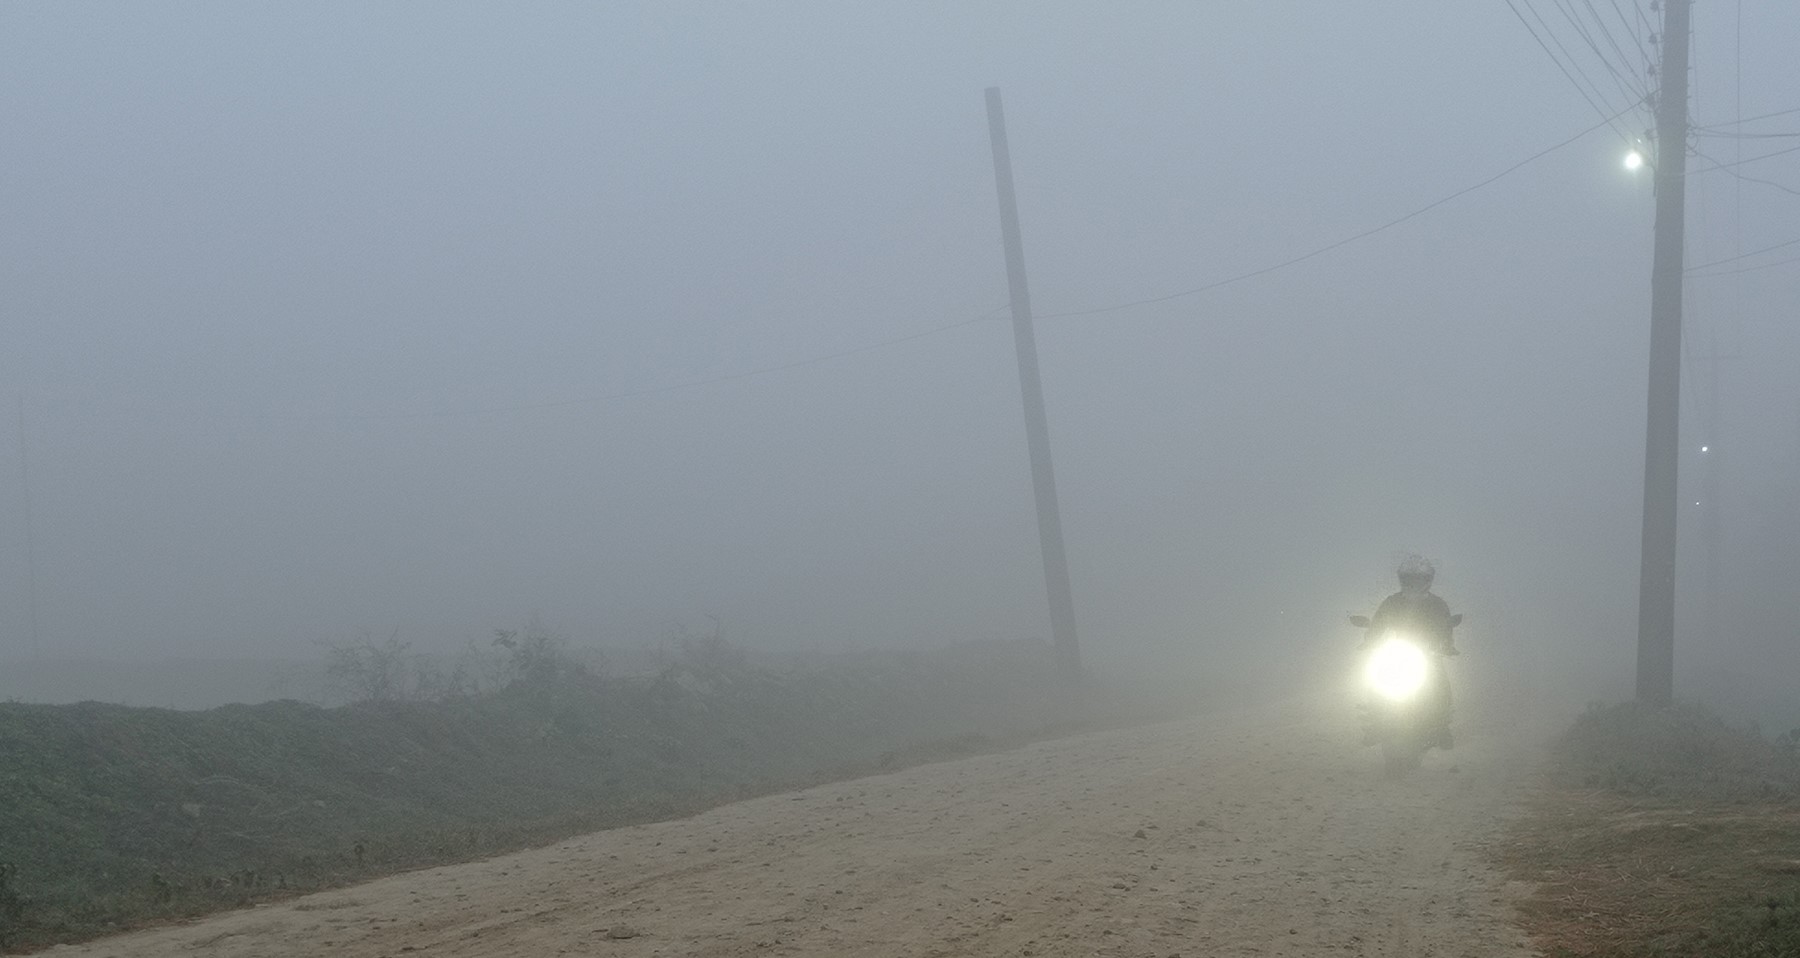 Fog envelops Terai region, caution advised for travelers